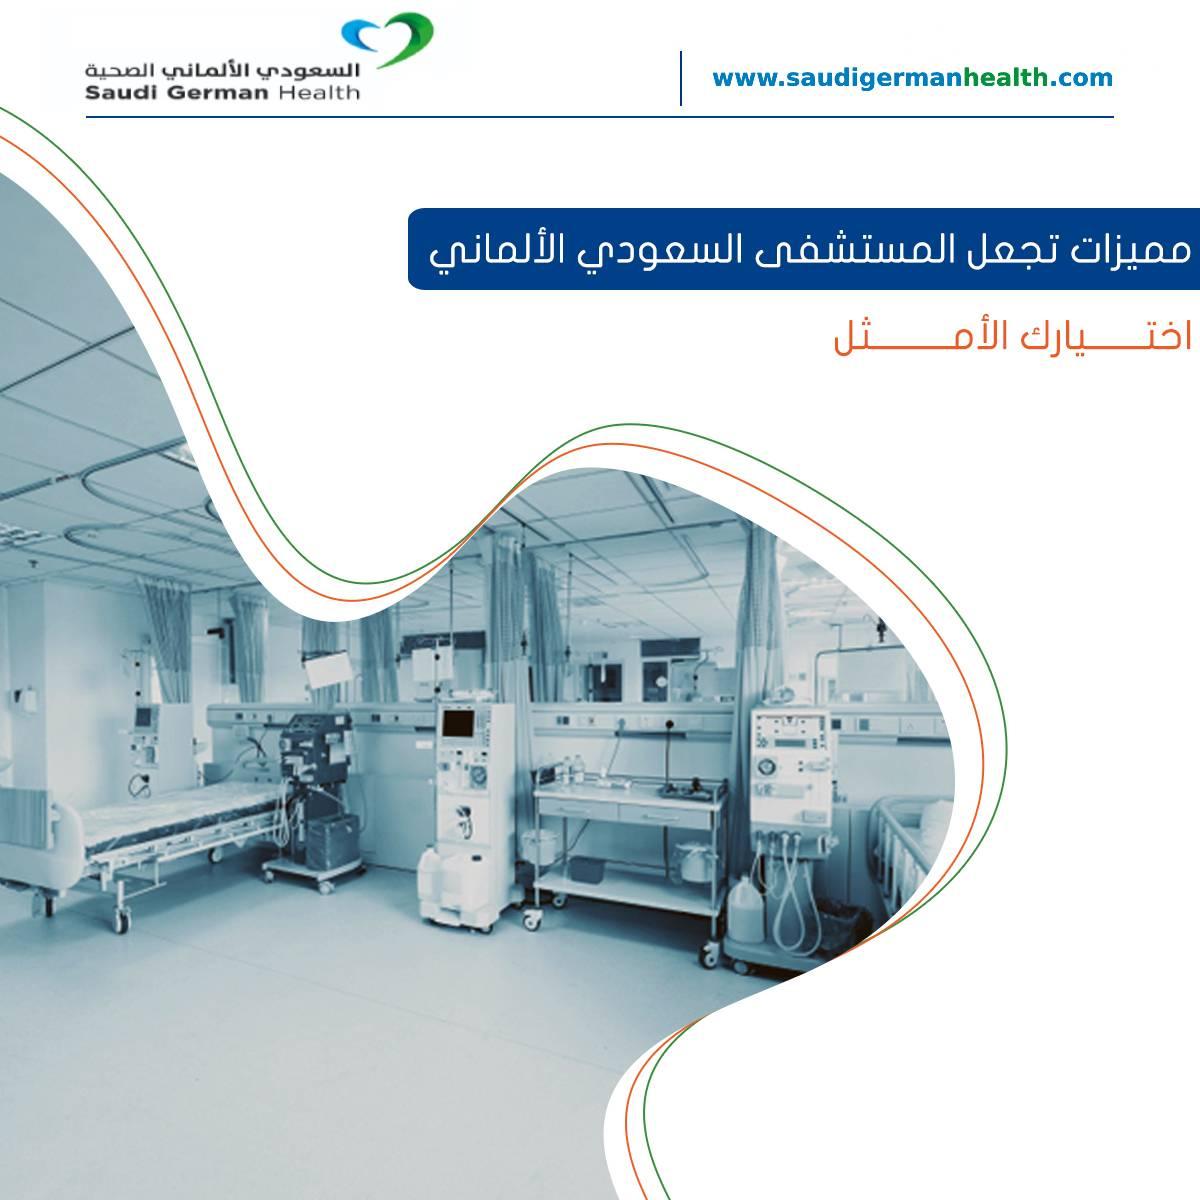 مميزات تجعل المستشفى السعودي الألماني اختيارك الأمثل